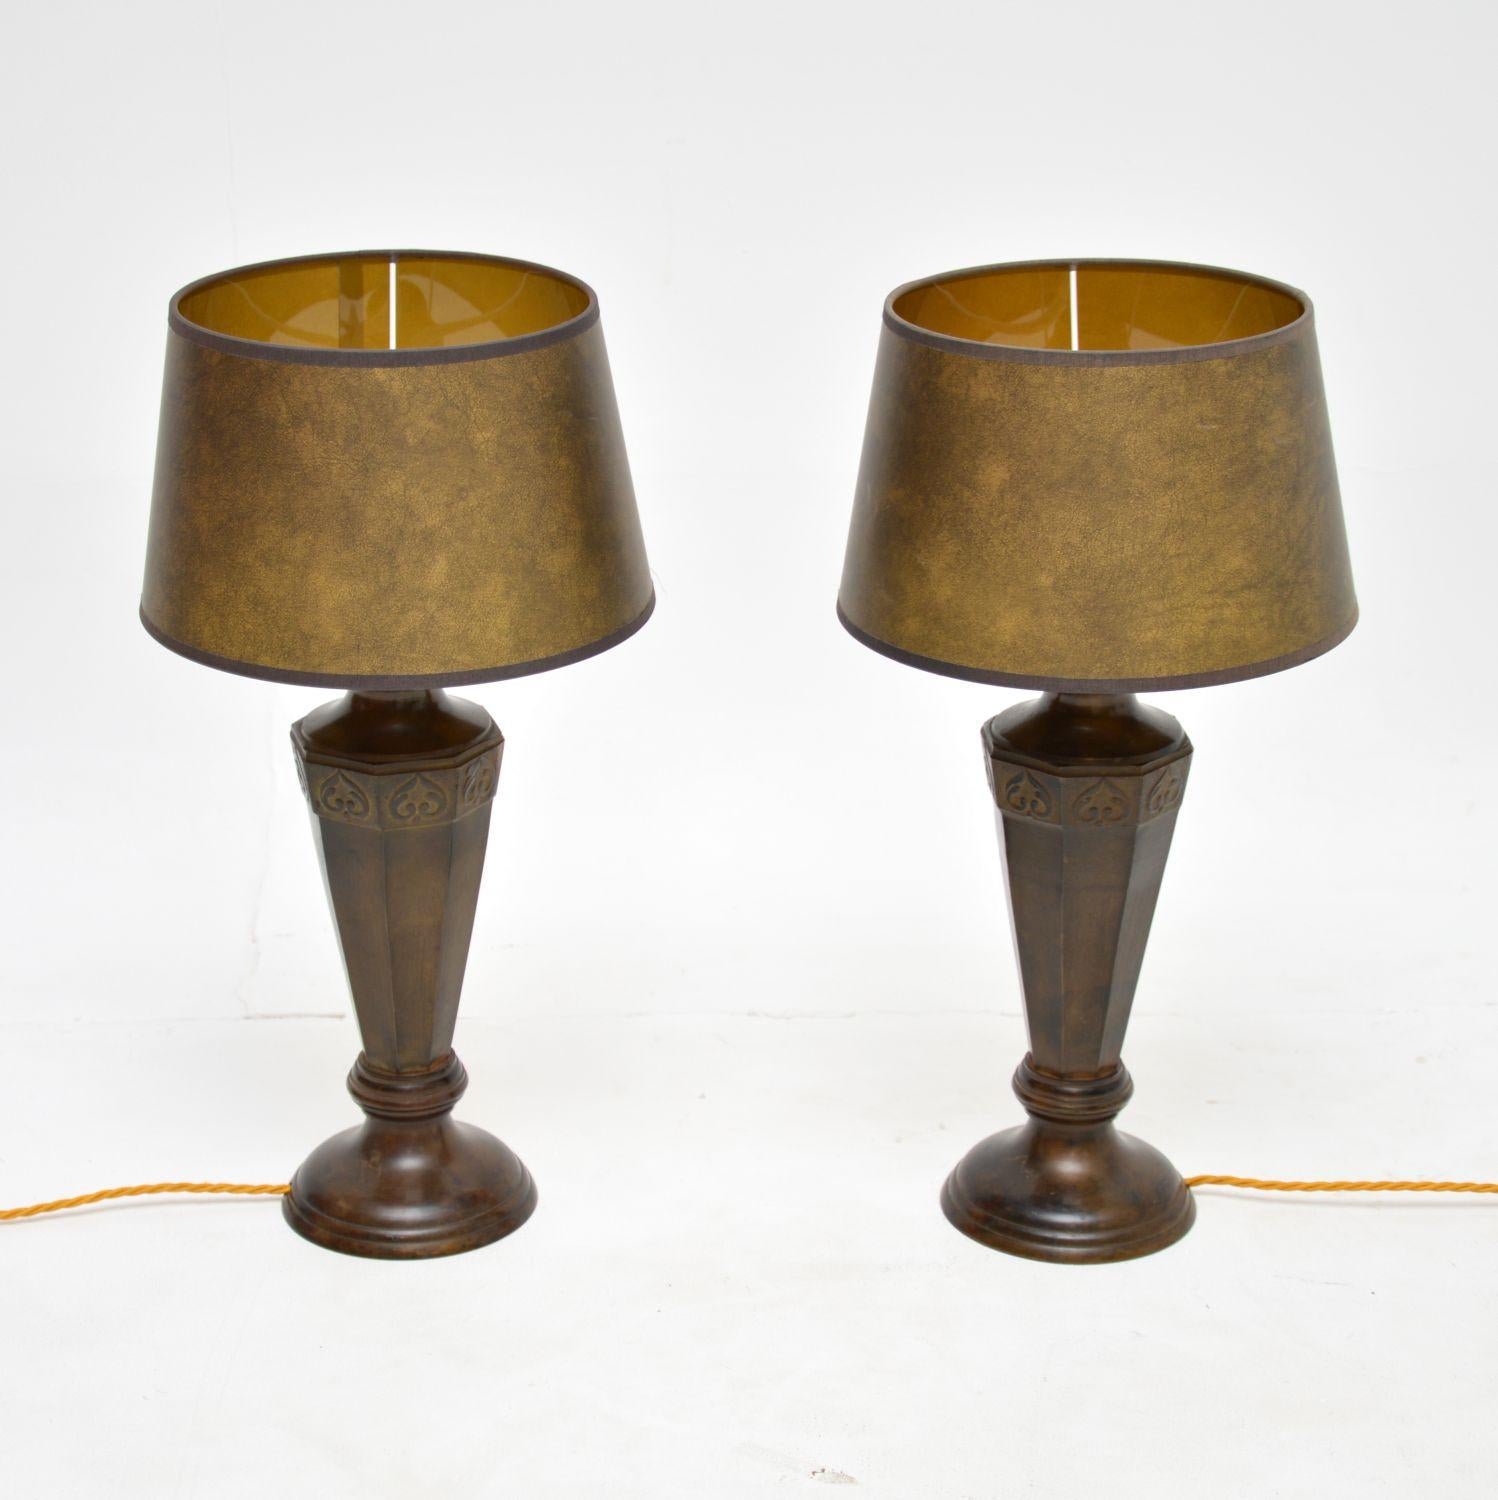 Une fantastique paire de lampes de table vintage en bronze massif. Elles sont de style néoclassique antique et datent probablement des années 1950.

La qualité est exceptionnelle, la taille est belle et les teintes originales les complètent très